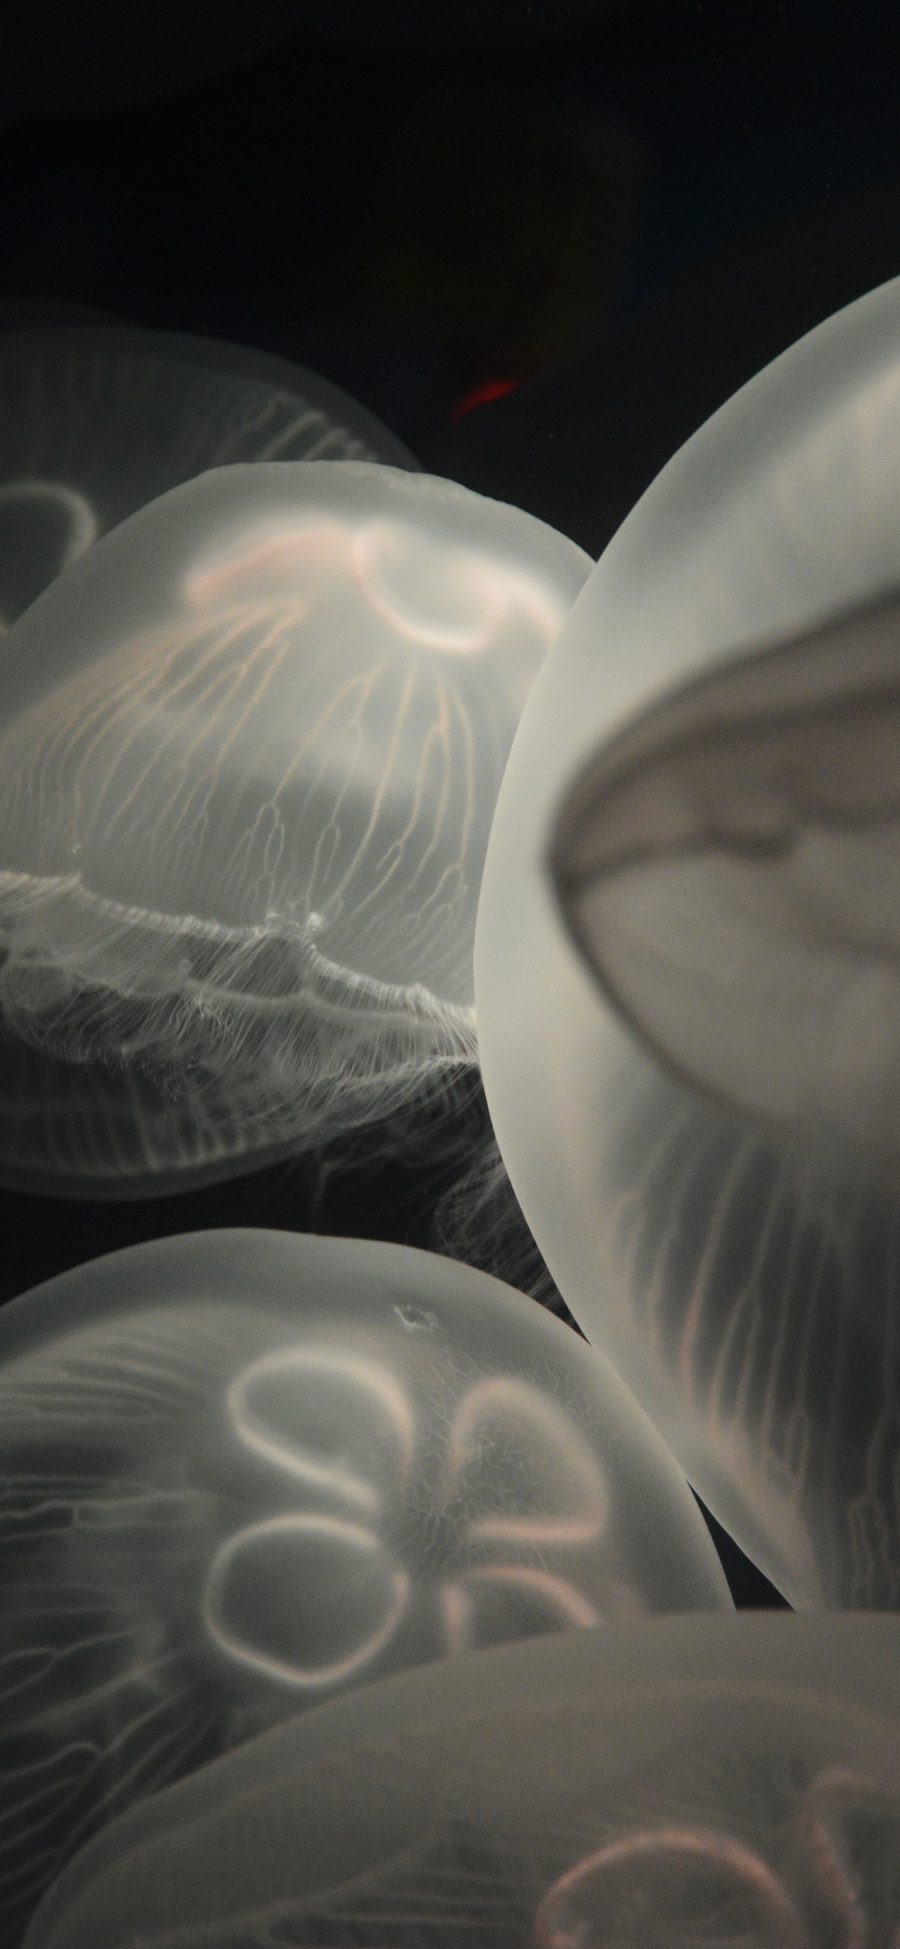 [2436×1125]水母 海洋生物 黑暗 游动 透明 苹果手机壁纸图片